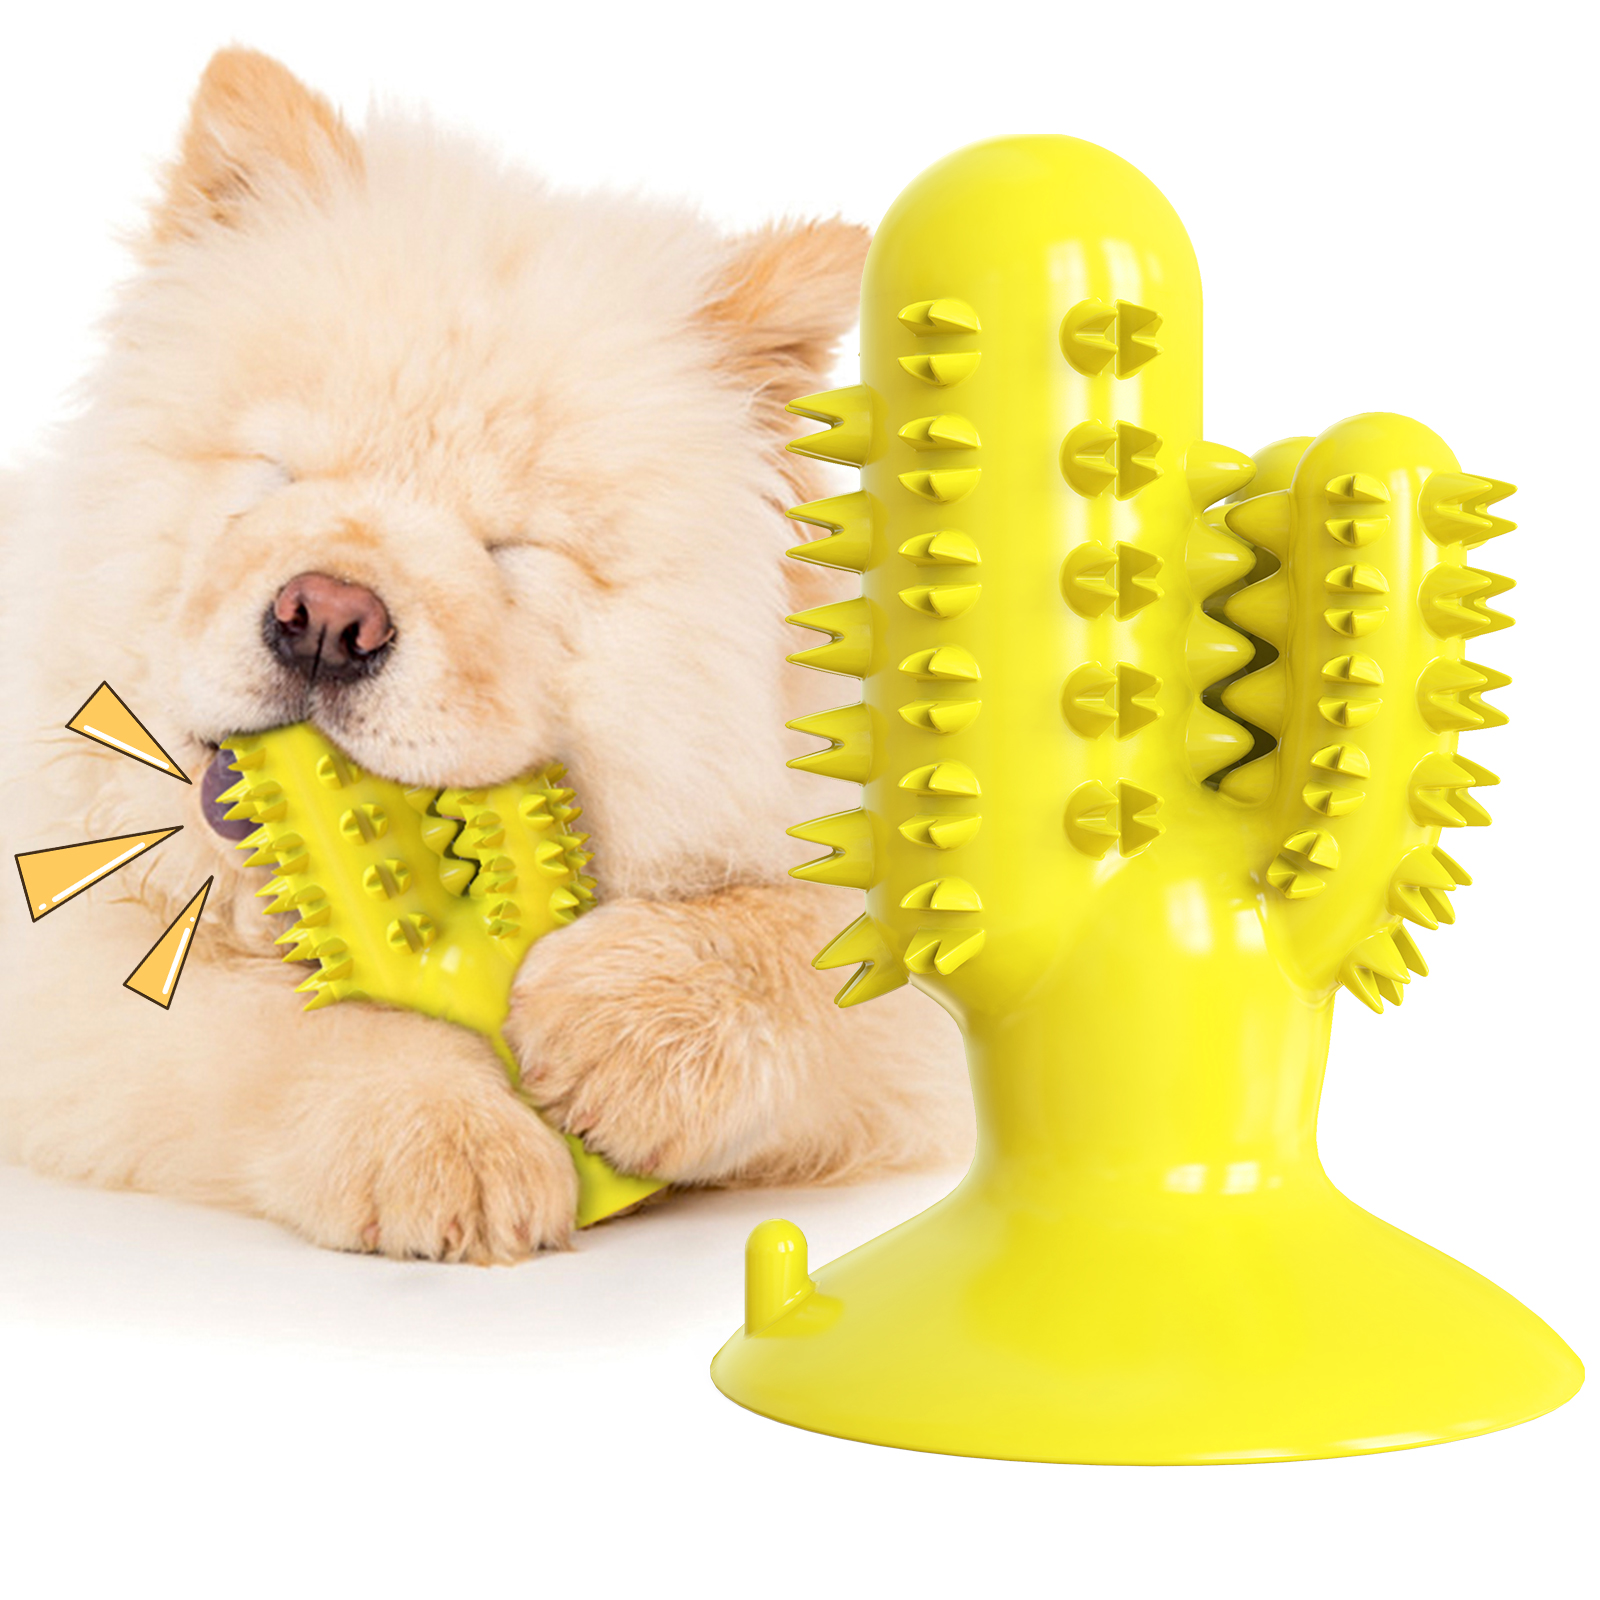 2020 새로운 디자인 선인장 모양 삐걱 거리는 개 칫솔 흡입 컵 강아지 개 씹는 장난감